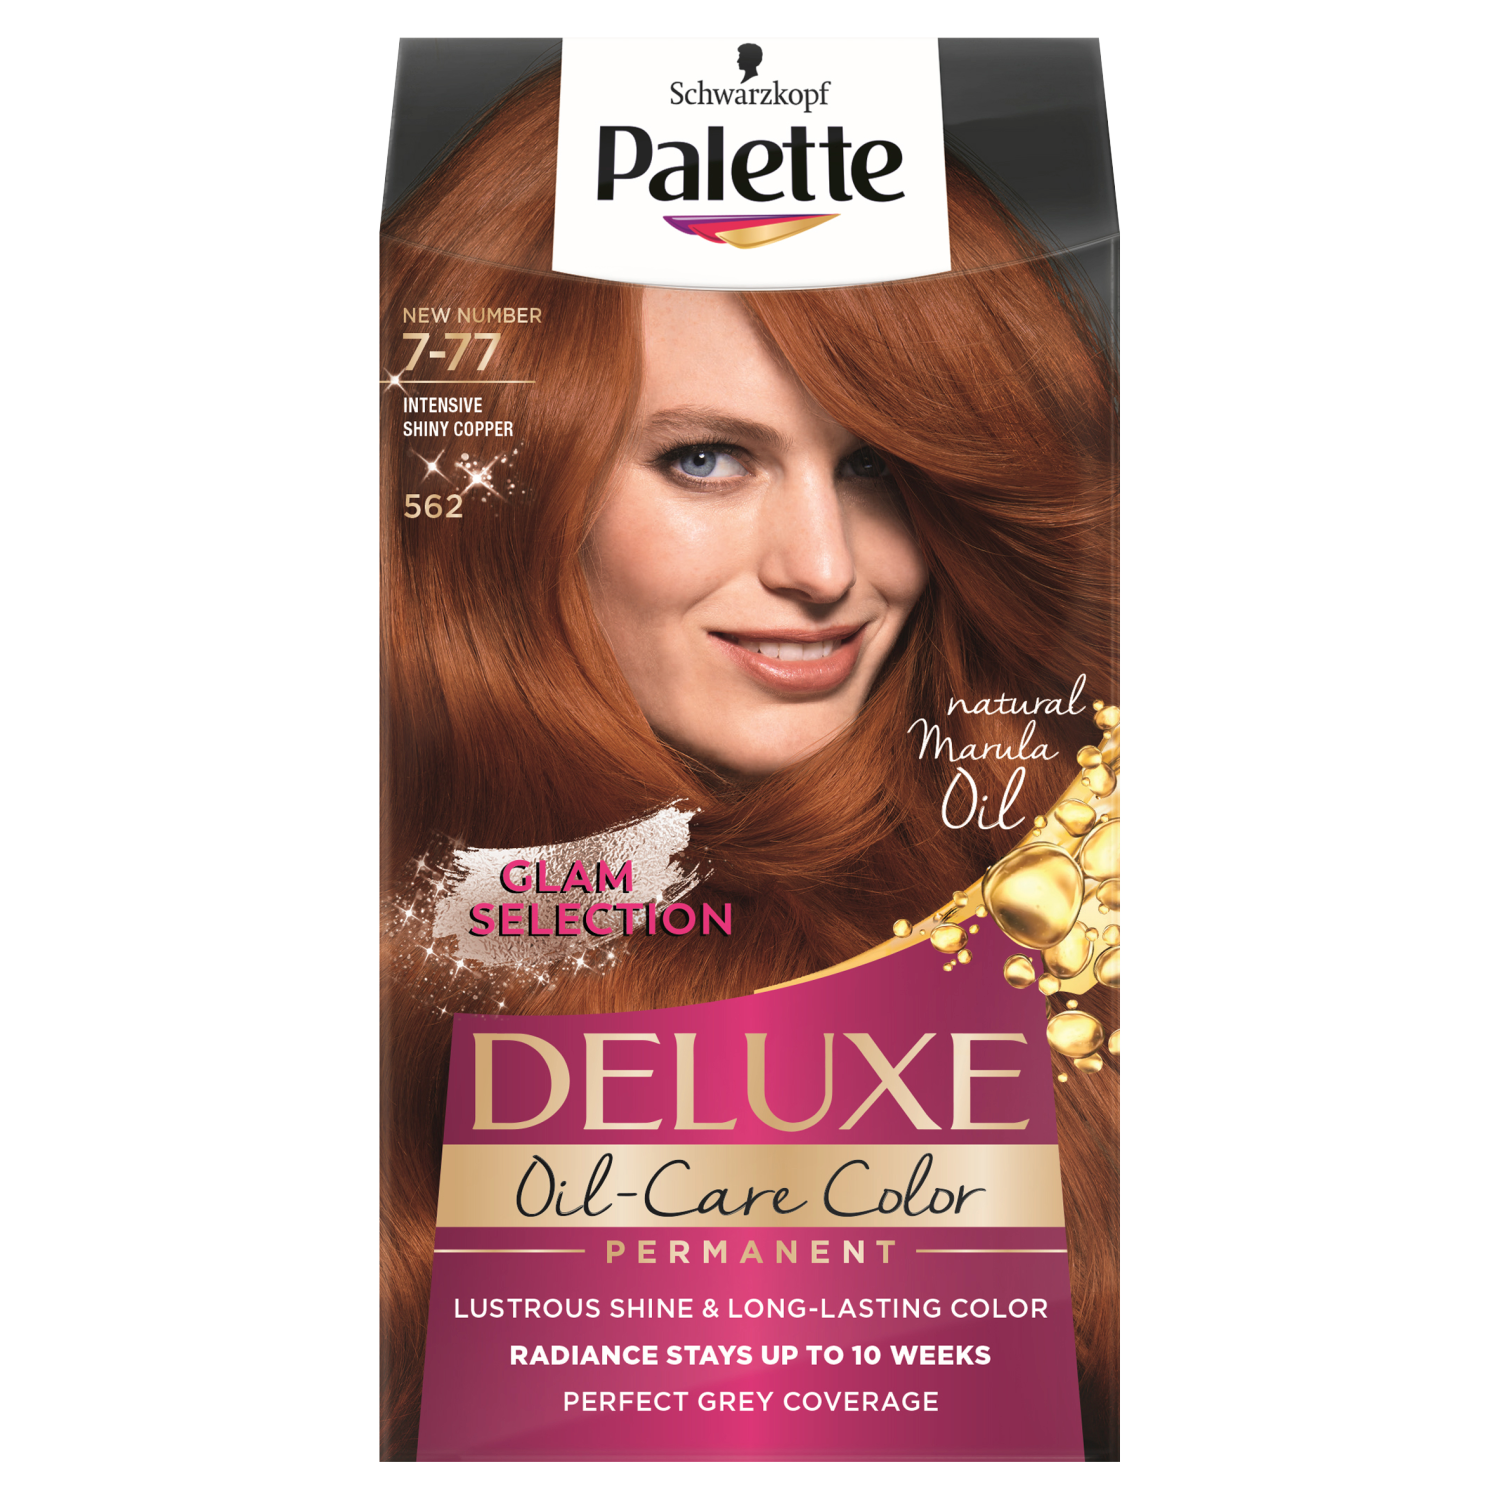 Palette Deluxe Oil-Care farba do włosów 7-77 (562) intensywna lśniąca miedź, 1 opak.